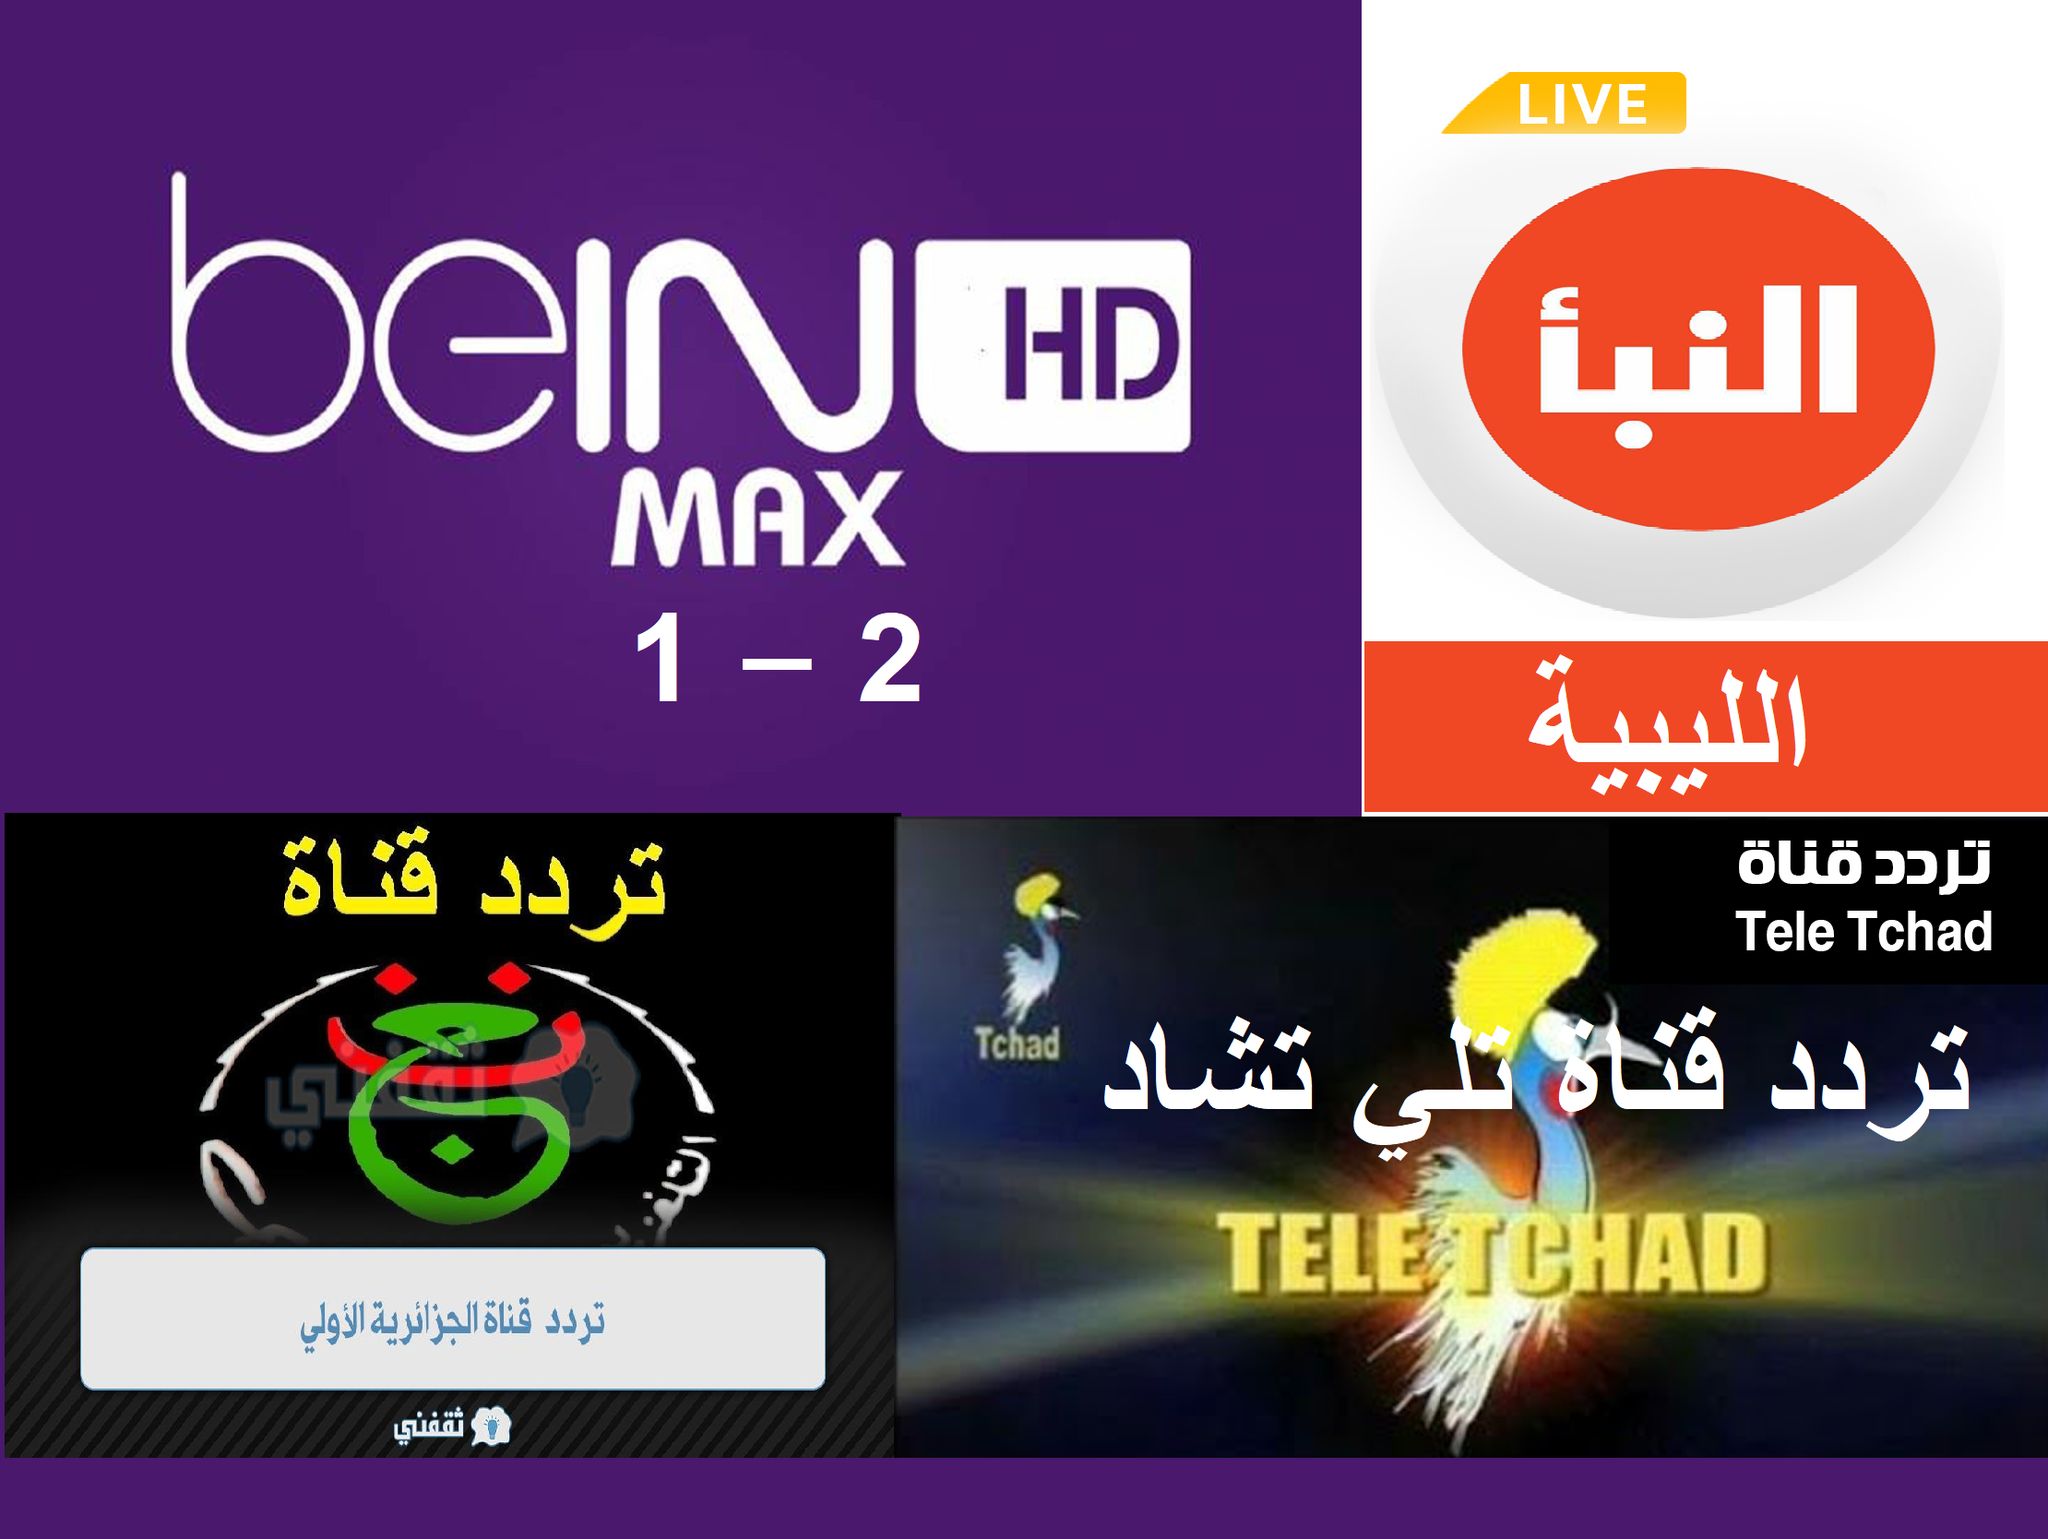 تردد قناة بي إن سبورت ماكس الأولى - الثانية beIN Sports HD 1-2 Max القنوات المجانية على نايل - عرب سات